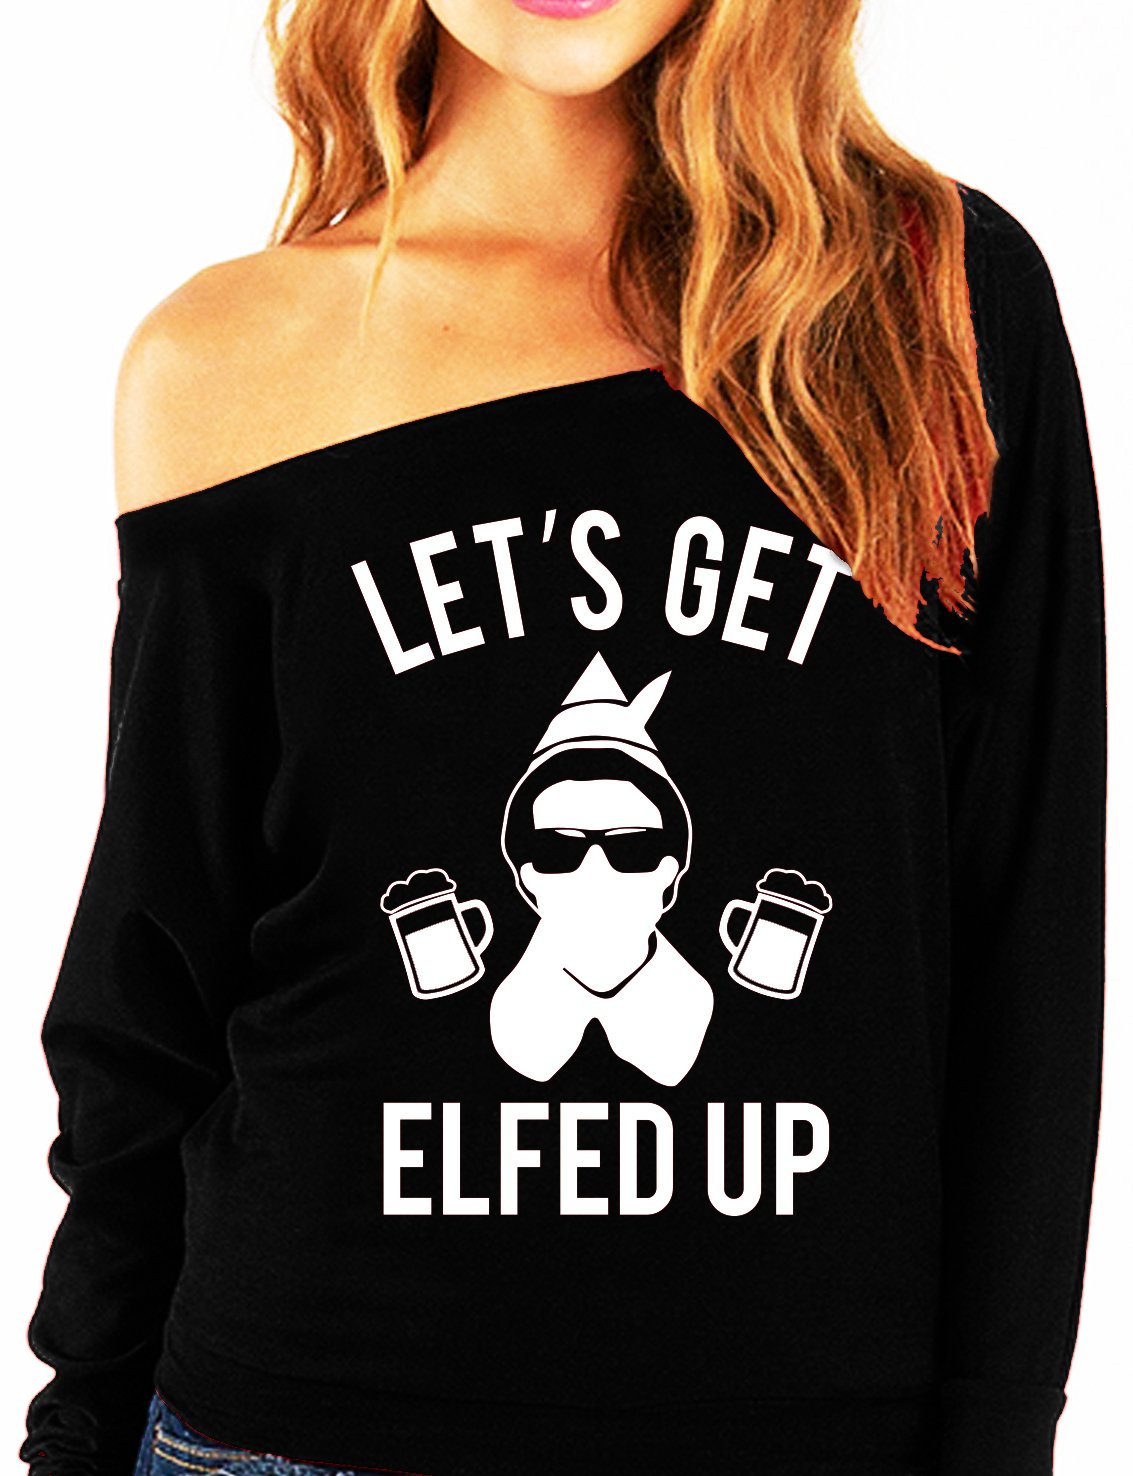 "Let's Get Elfed Up" Funny Off-Shoulder Christmas Sweatshirt